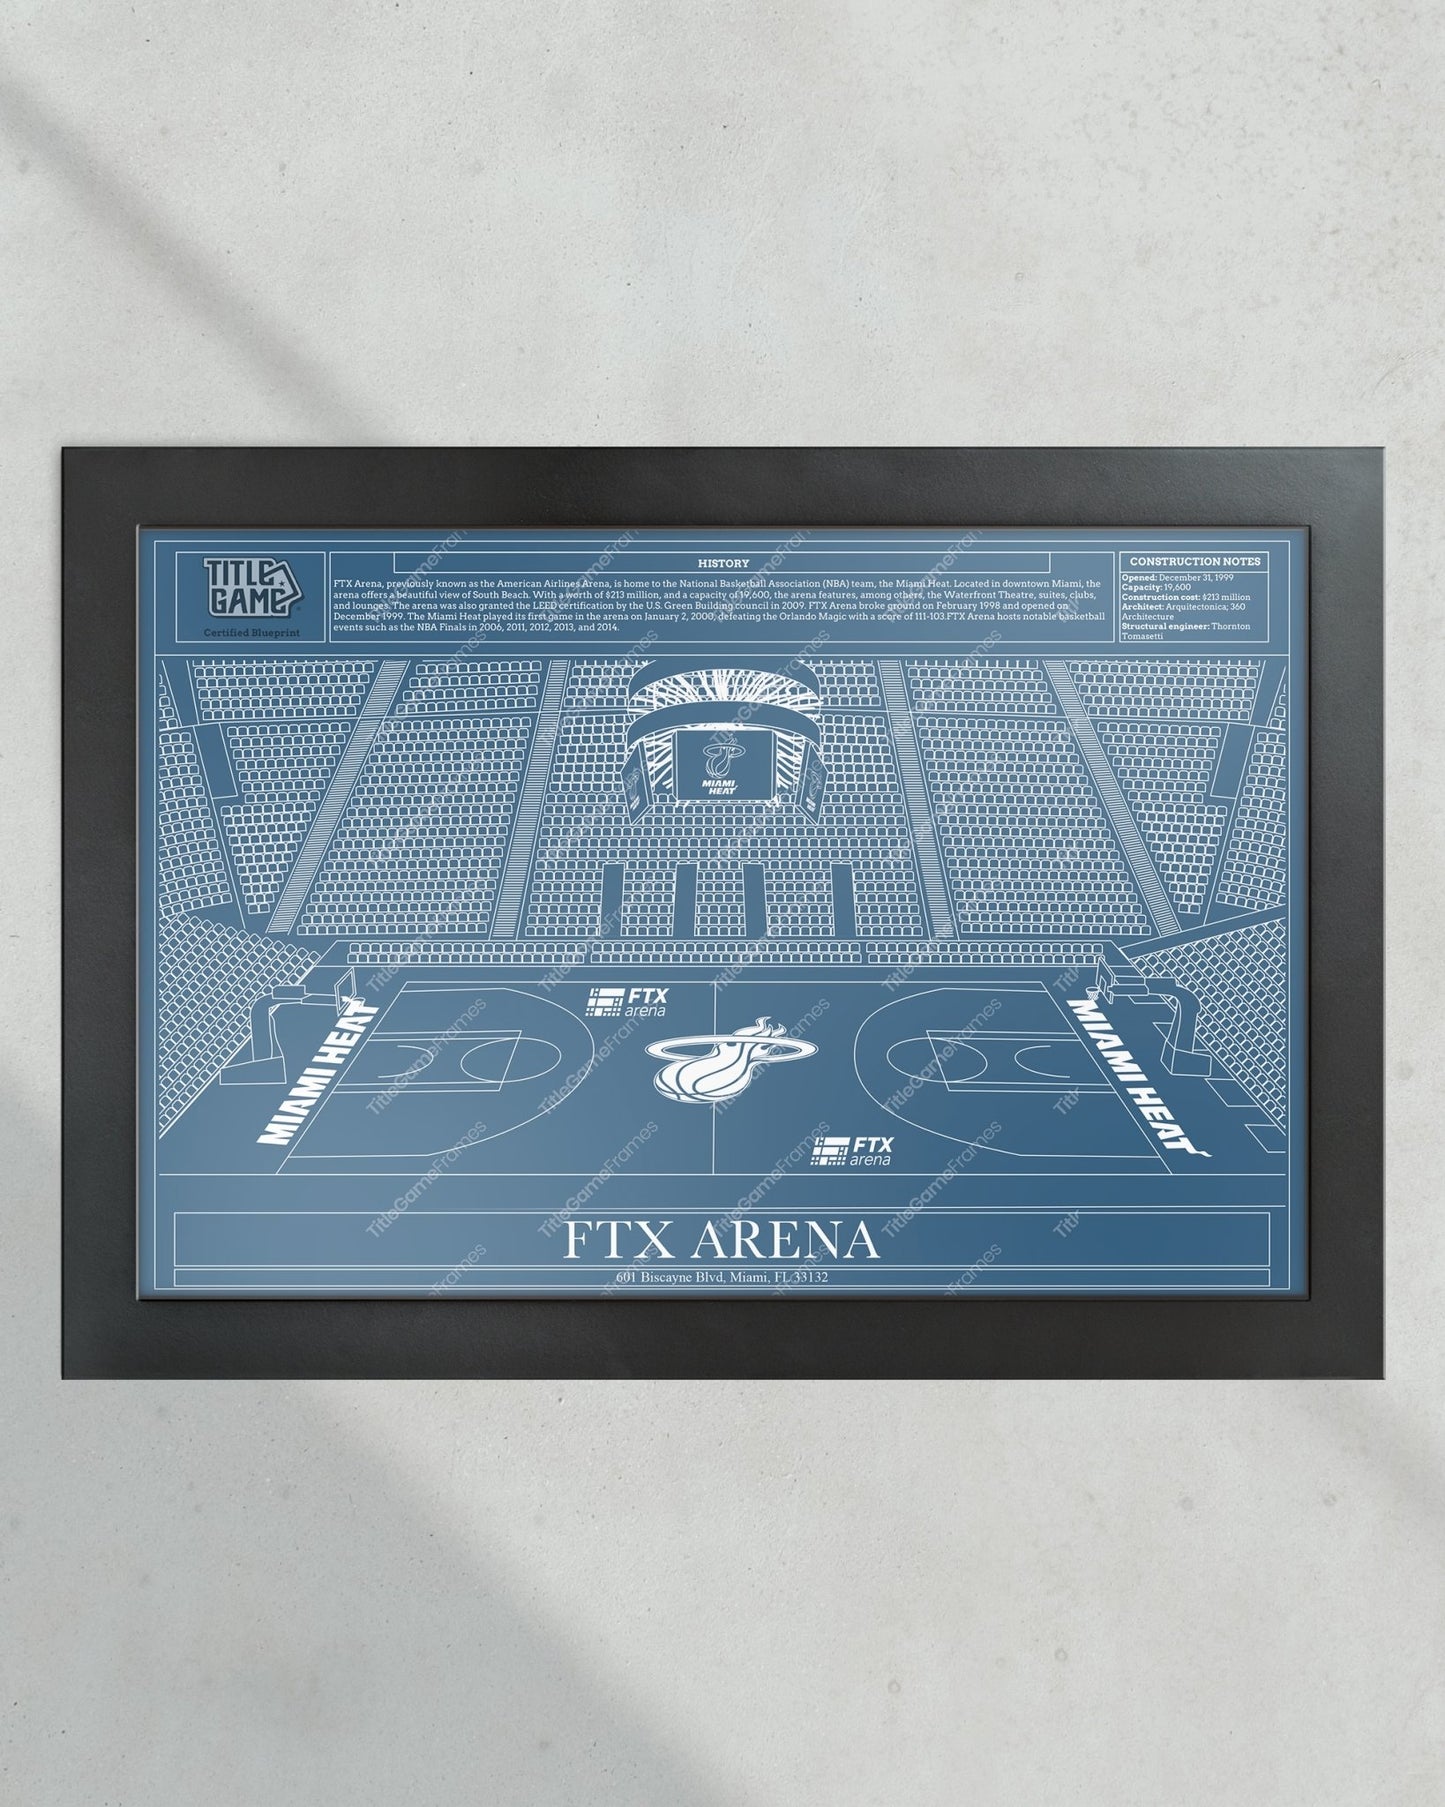 Miami Heat FTX Arena NBA Basketball Stadium Blueprint - Title Game Frames